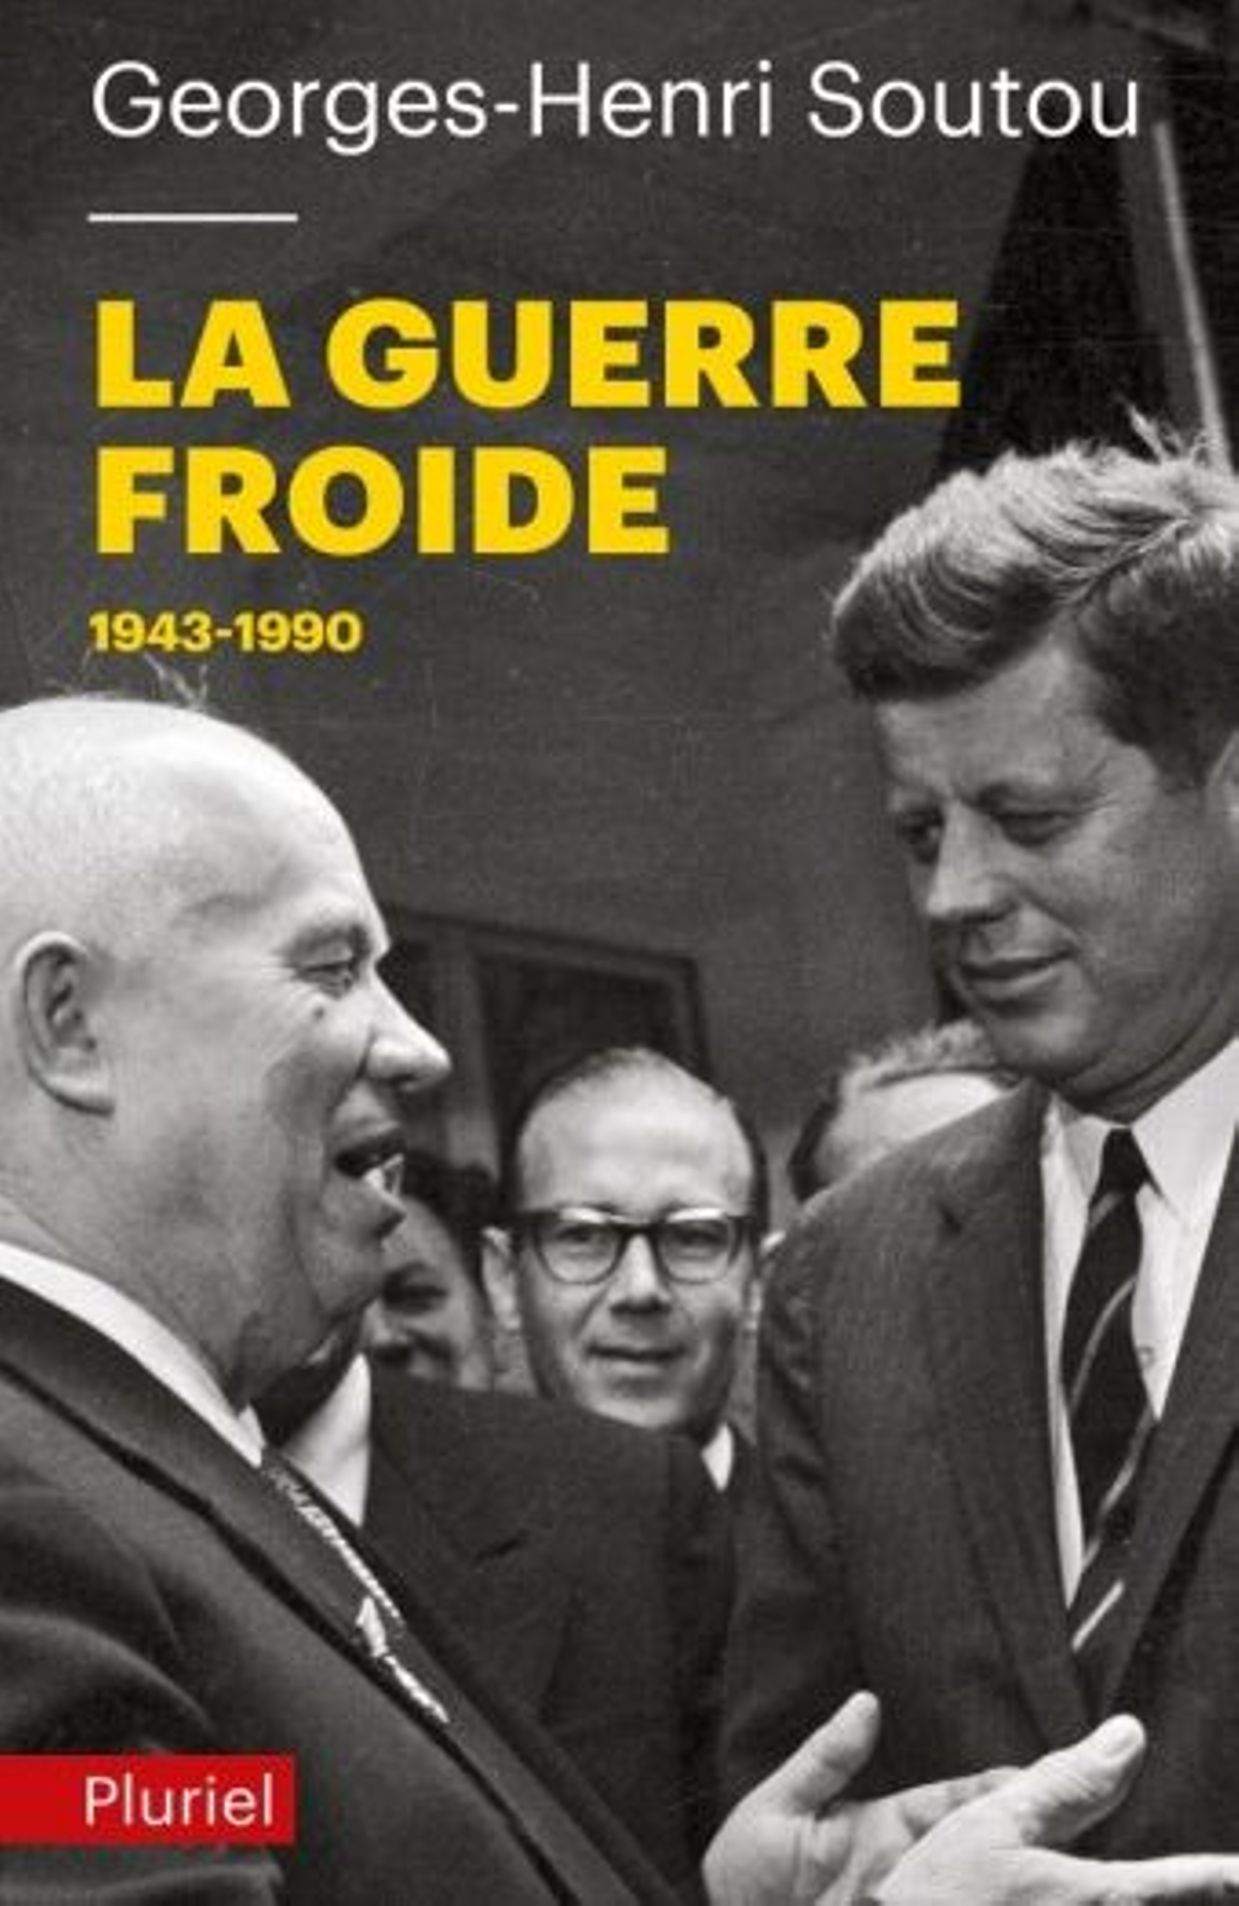 La Guerre froide 1943-1990, Georges-Henri SOUTOU, Librairie Arthème Fayard/Pluriel, Paris, 2010. 